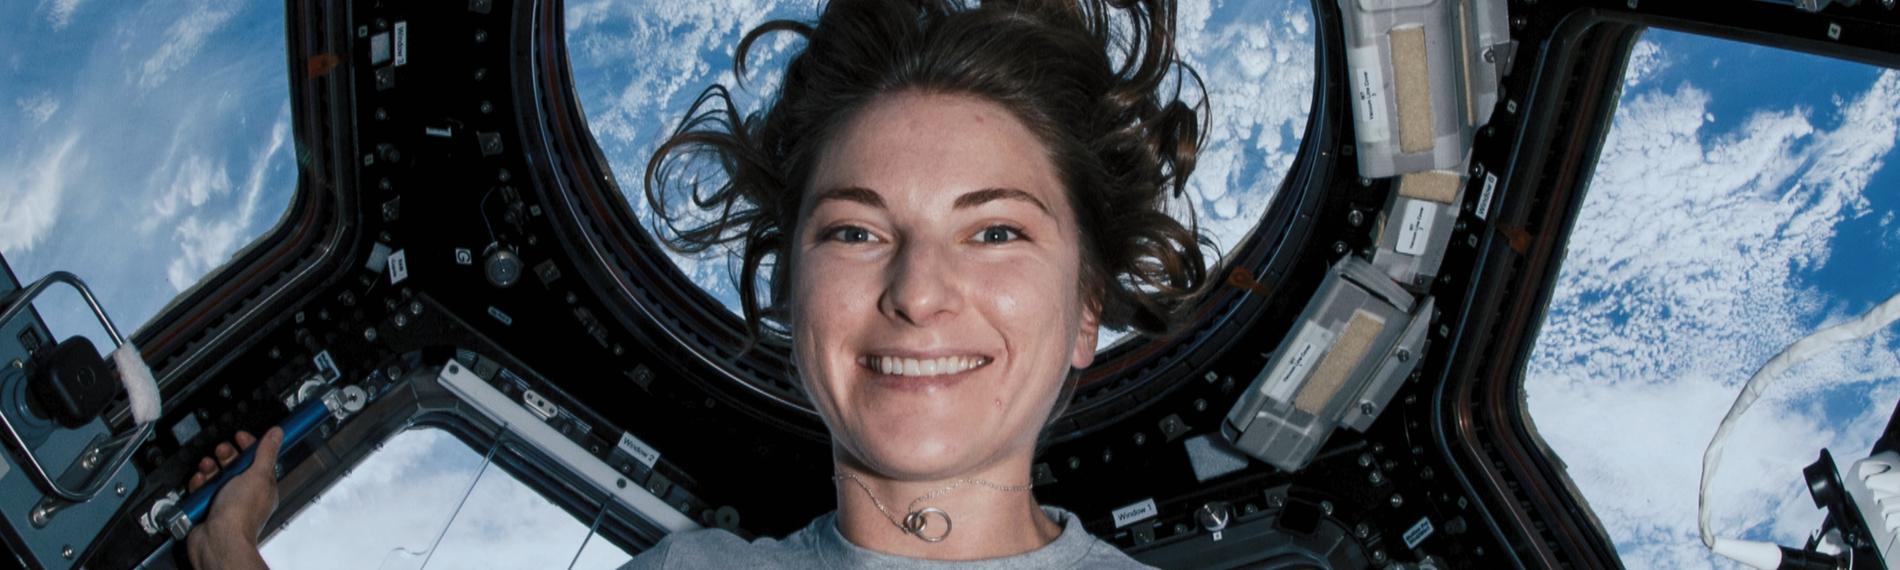 Die NASA-Astronautin Kayla Barron